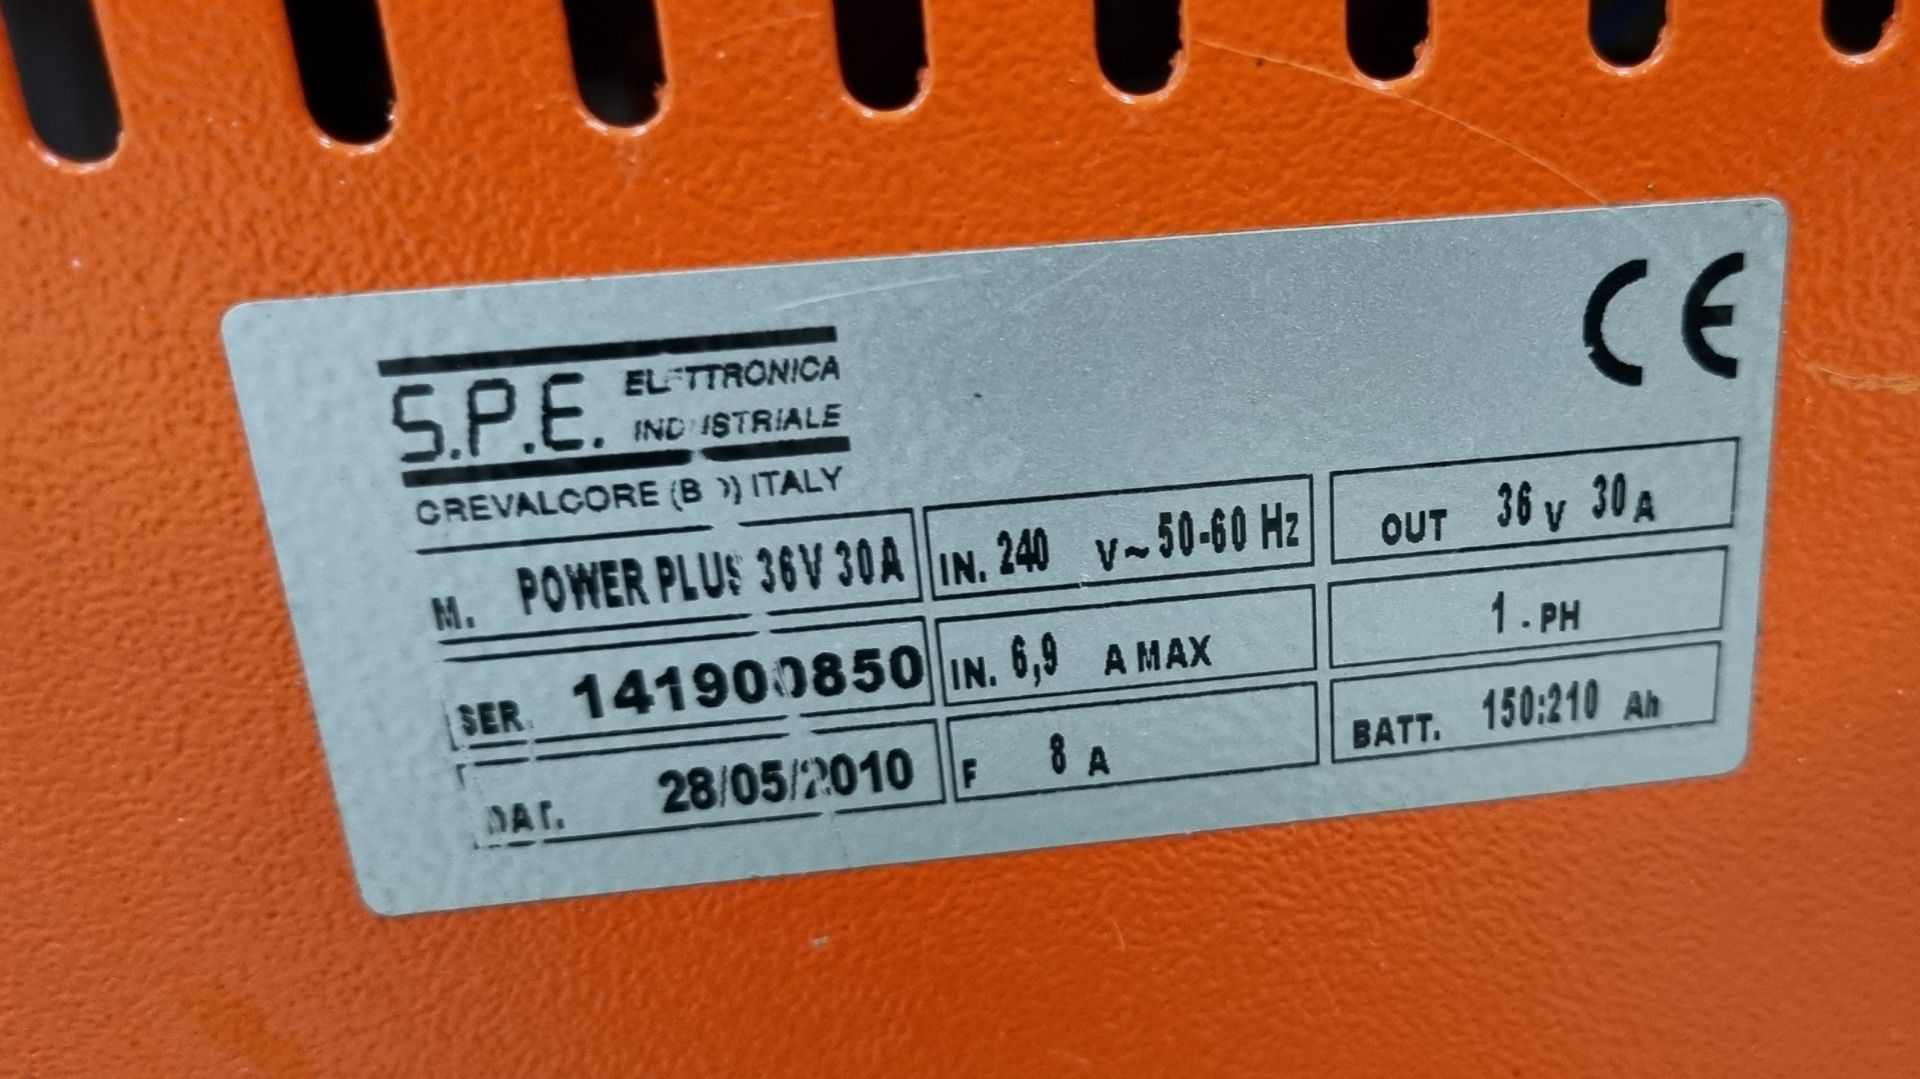 SPE Power plus battery charger - Bild 4 aus 4